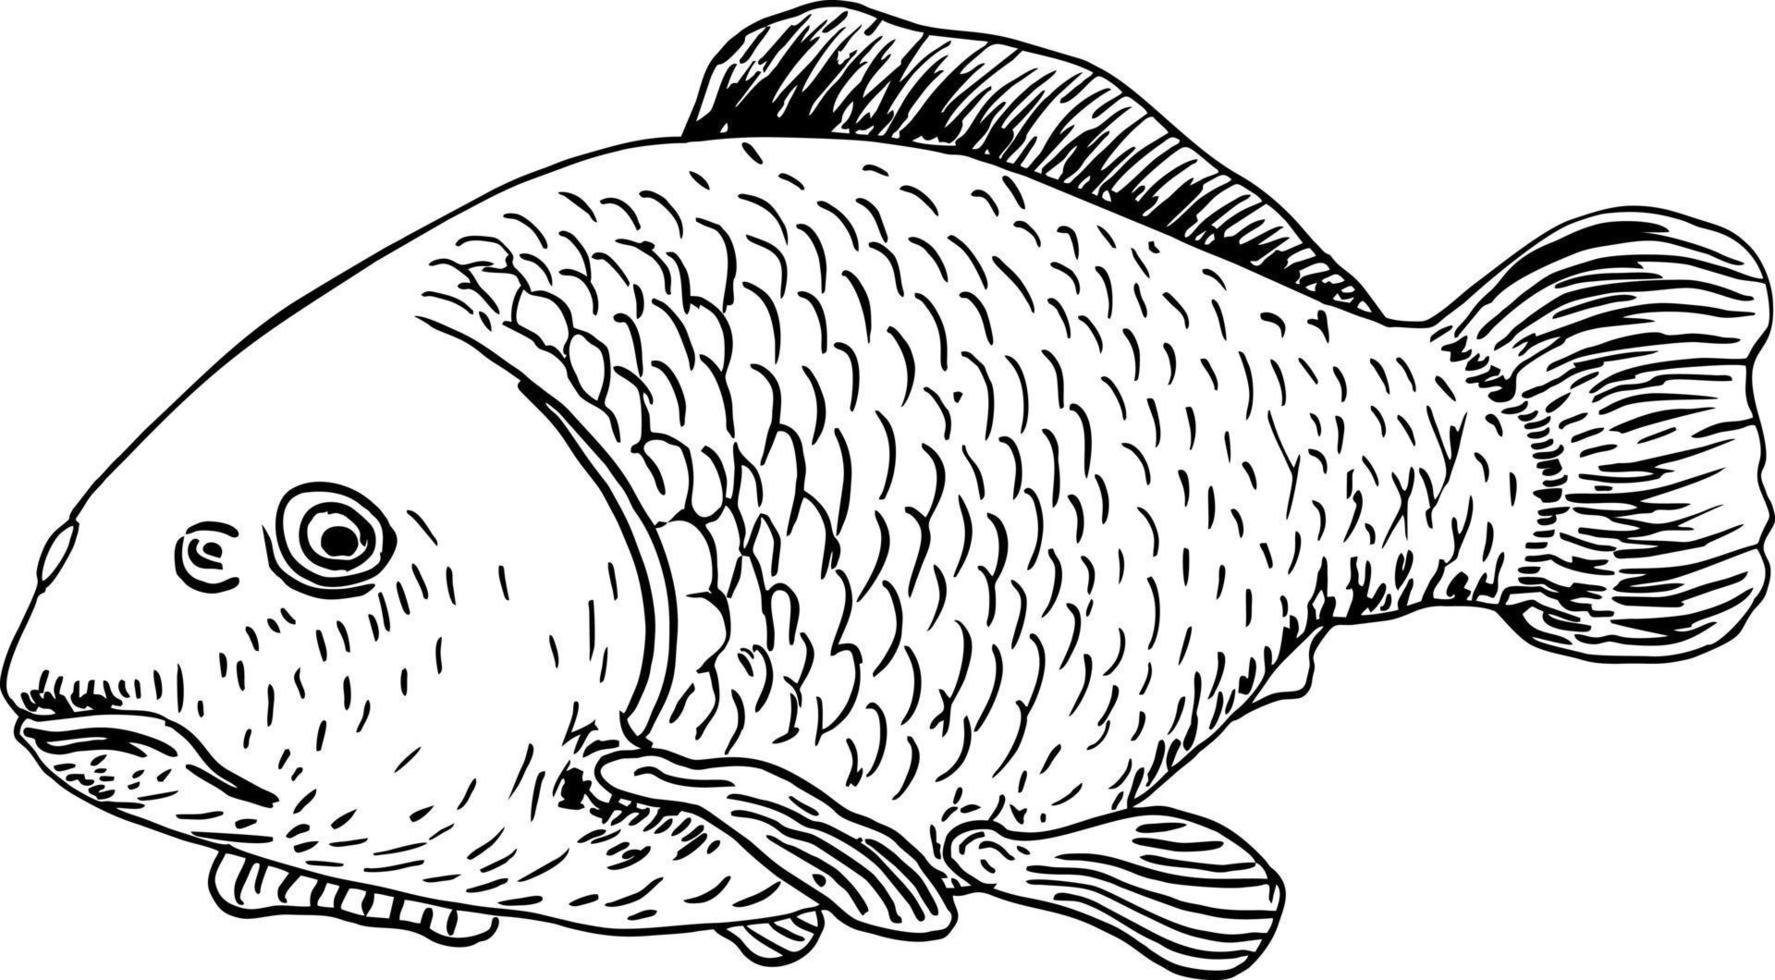 realistisk fisk skiss. karp sjö fisk. begrepp konst för horoskop, tatuering, konservering burk klistermärke, affär märka etc vektor